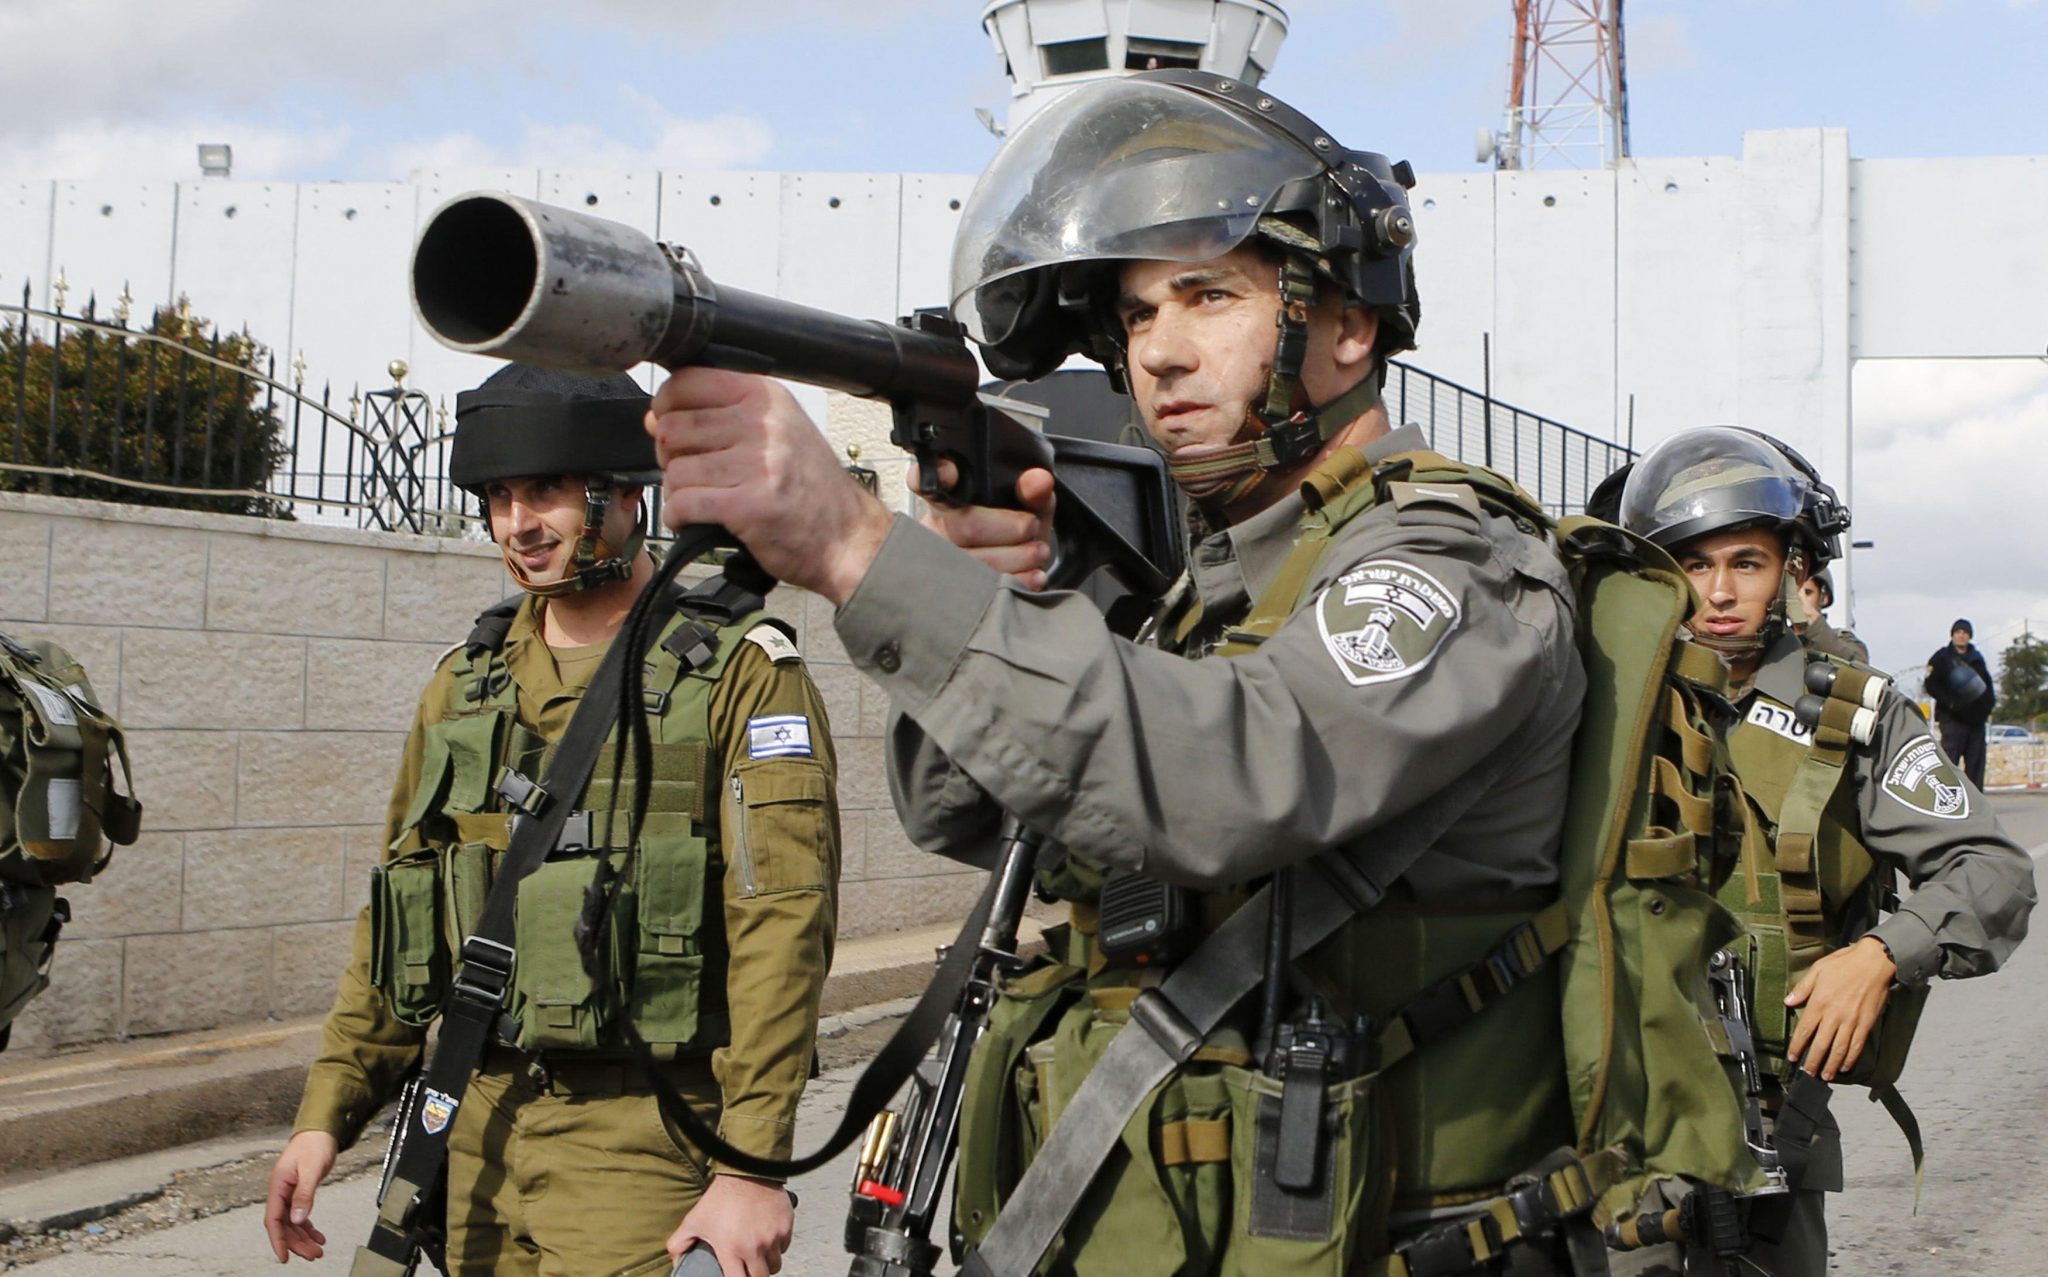   توغل آليات عسكرية إسرائيلية فى أراضى الفلسطينيين جنوب قطاع غزة